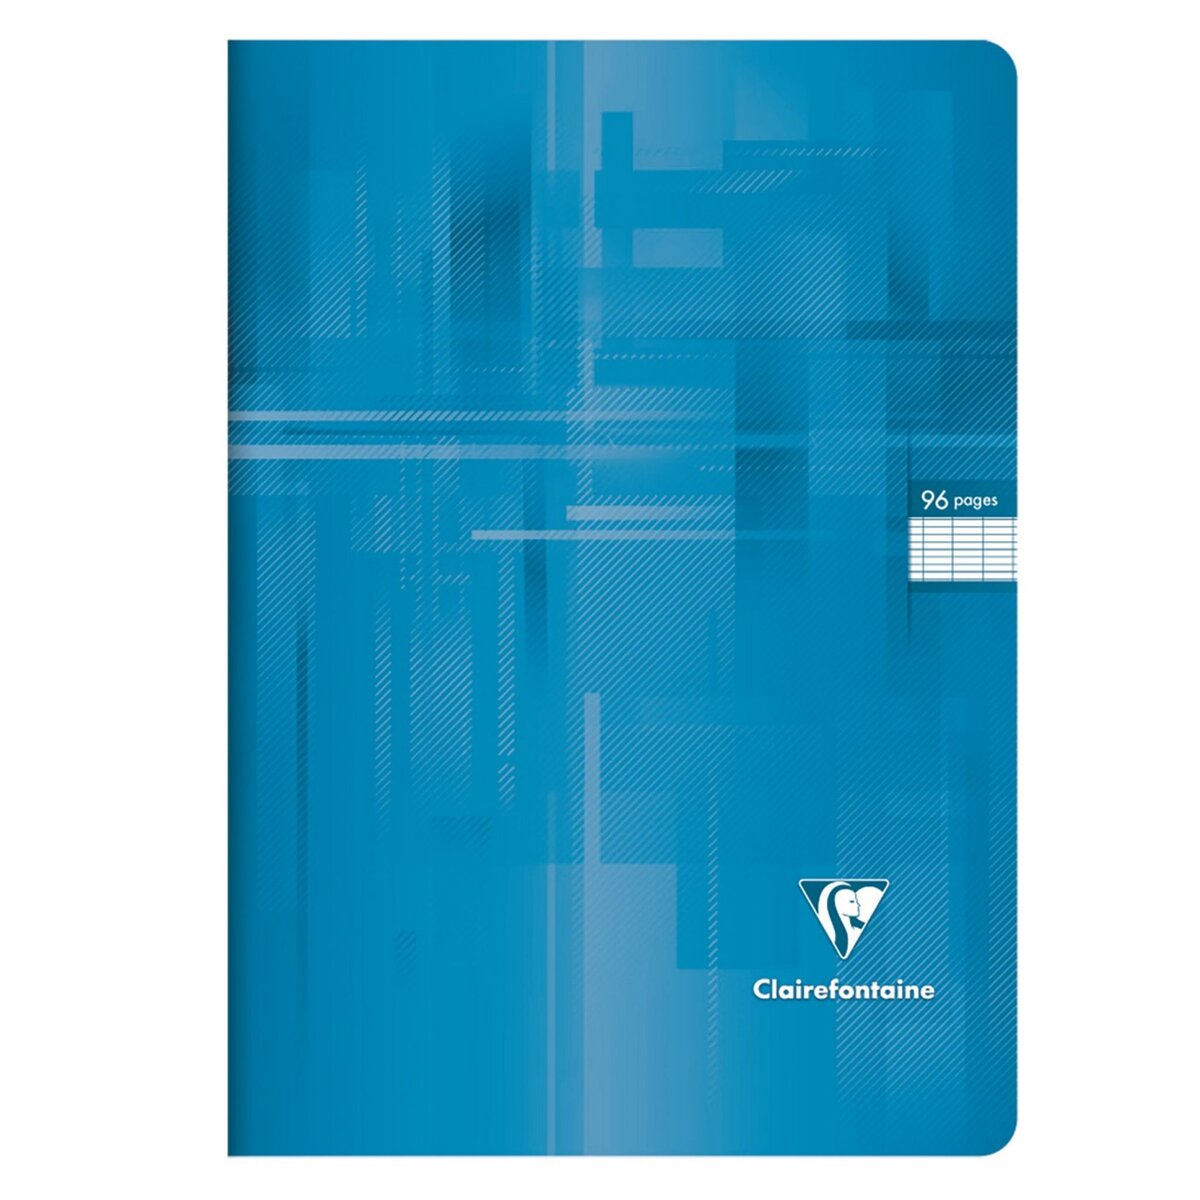 CLAIREFONTAINE Cahier piqué 24x32cm 96 pages grands carreaux Seyes bleu clair